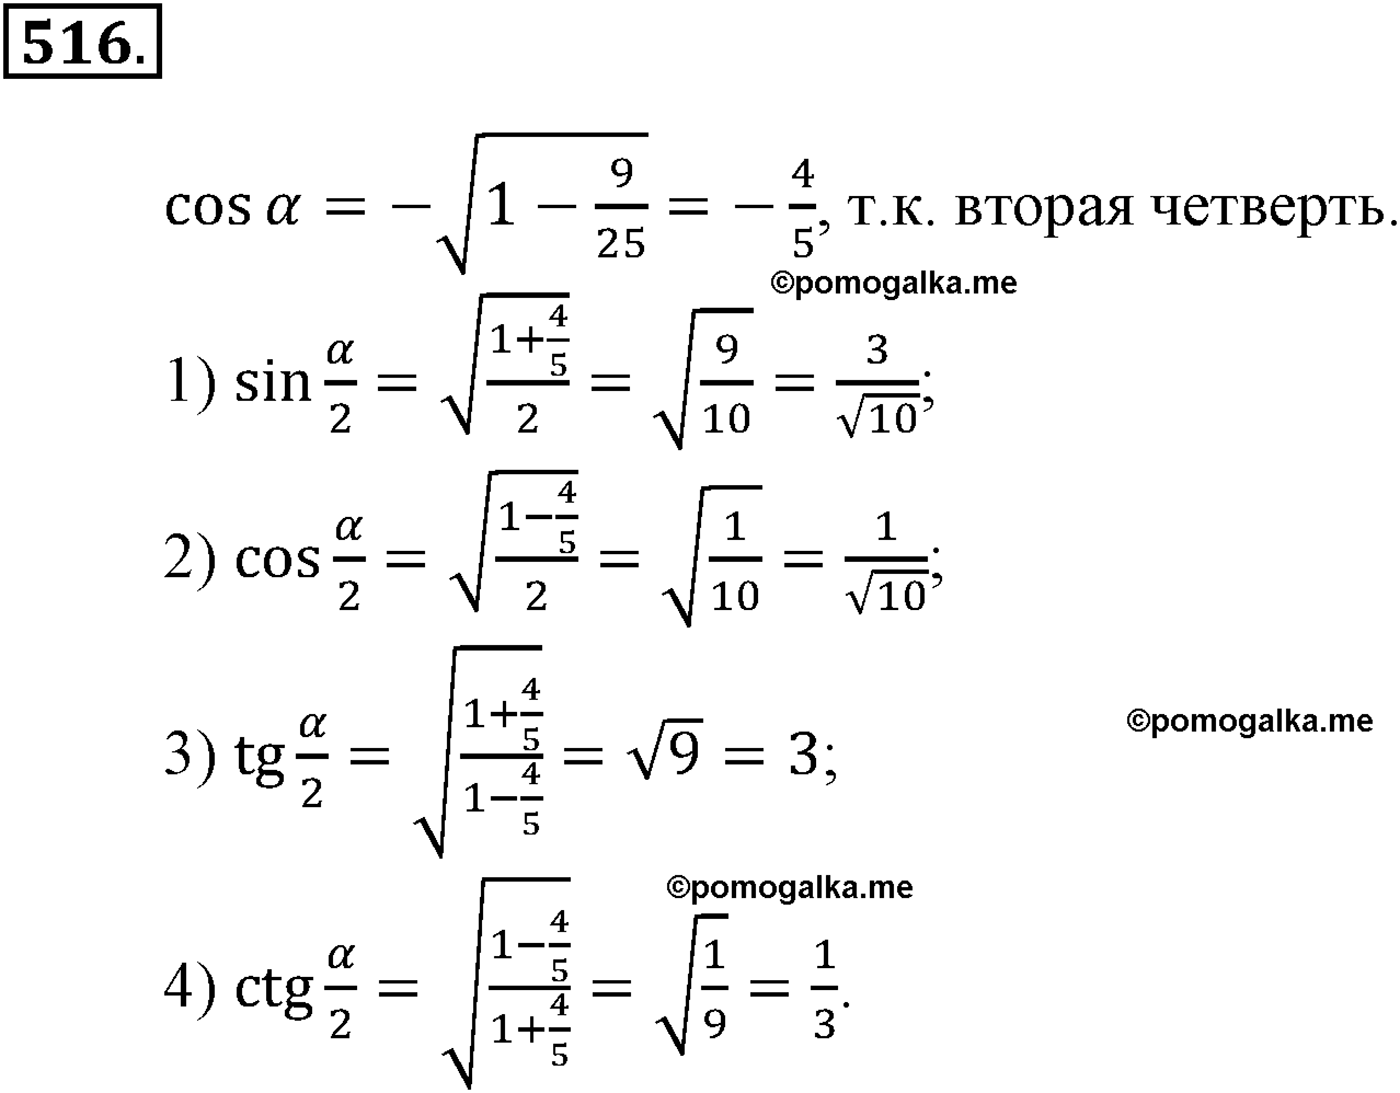 разбор задачи №516 по алгебре за 10-11 класс из учебника Алимова, Колягина